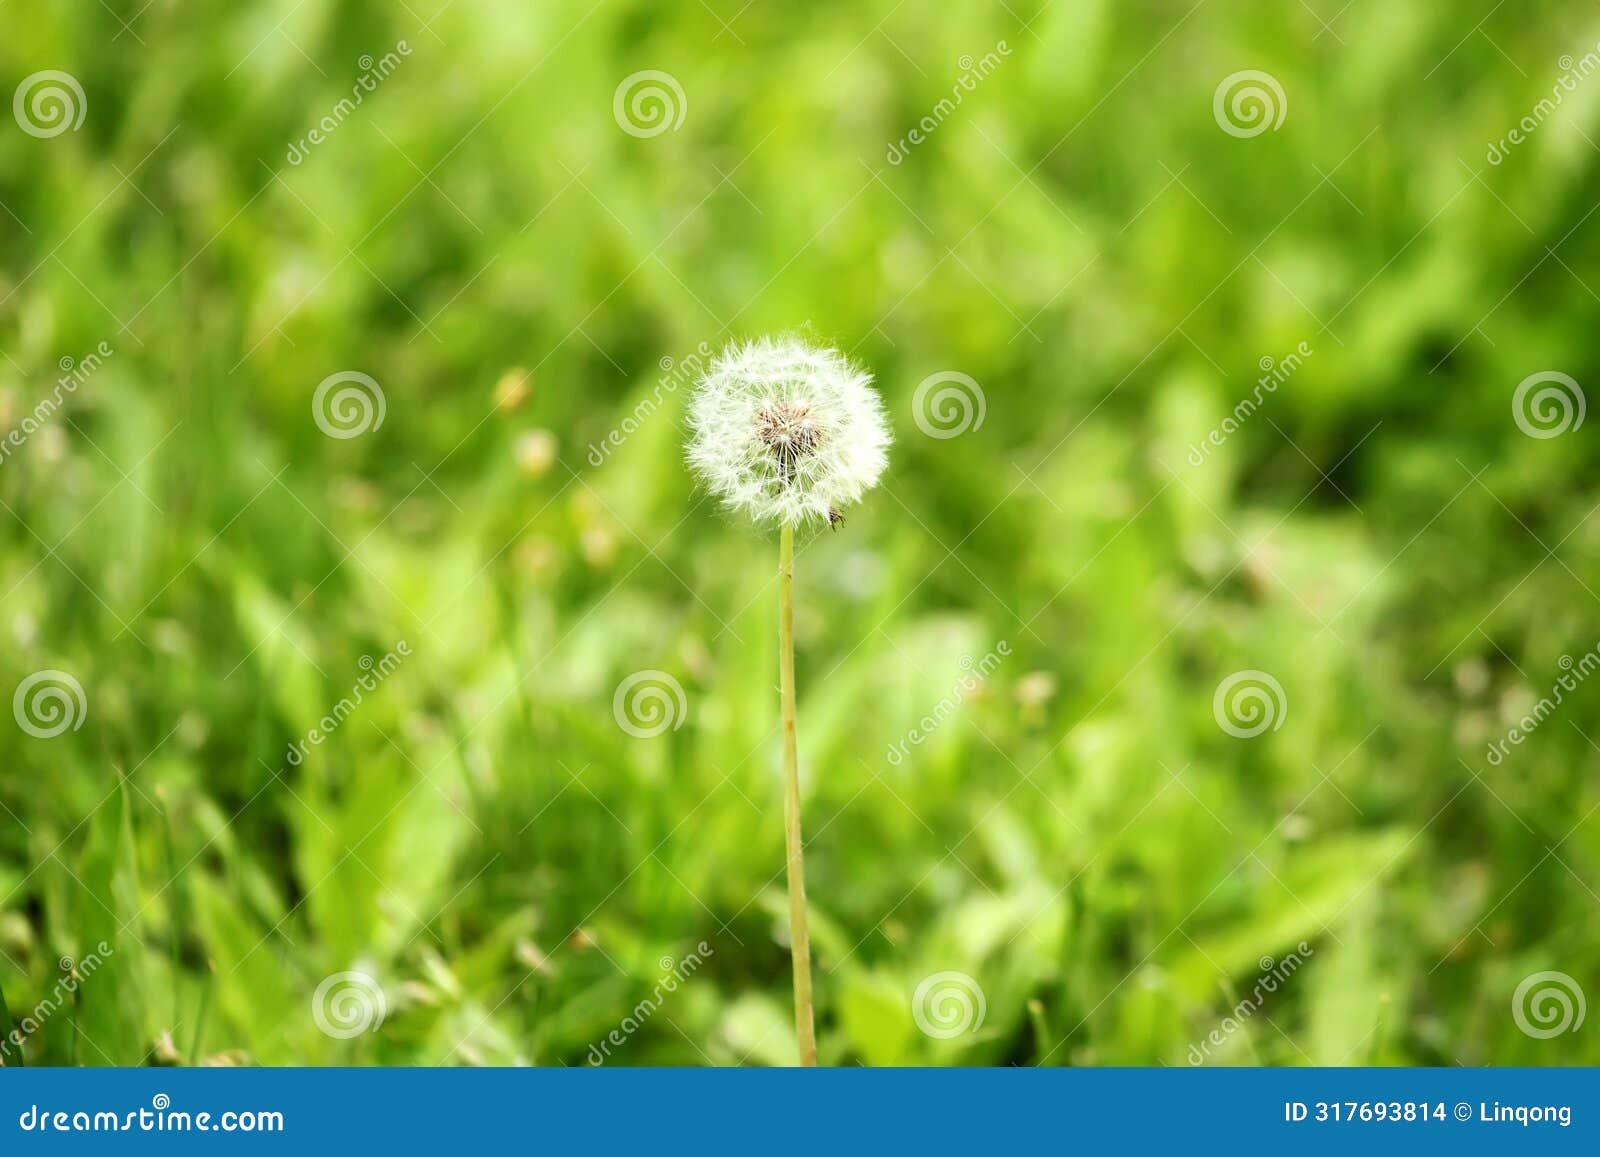 a dandelion fruit on the grassland